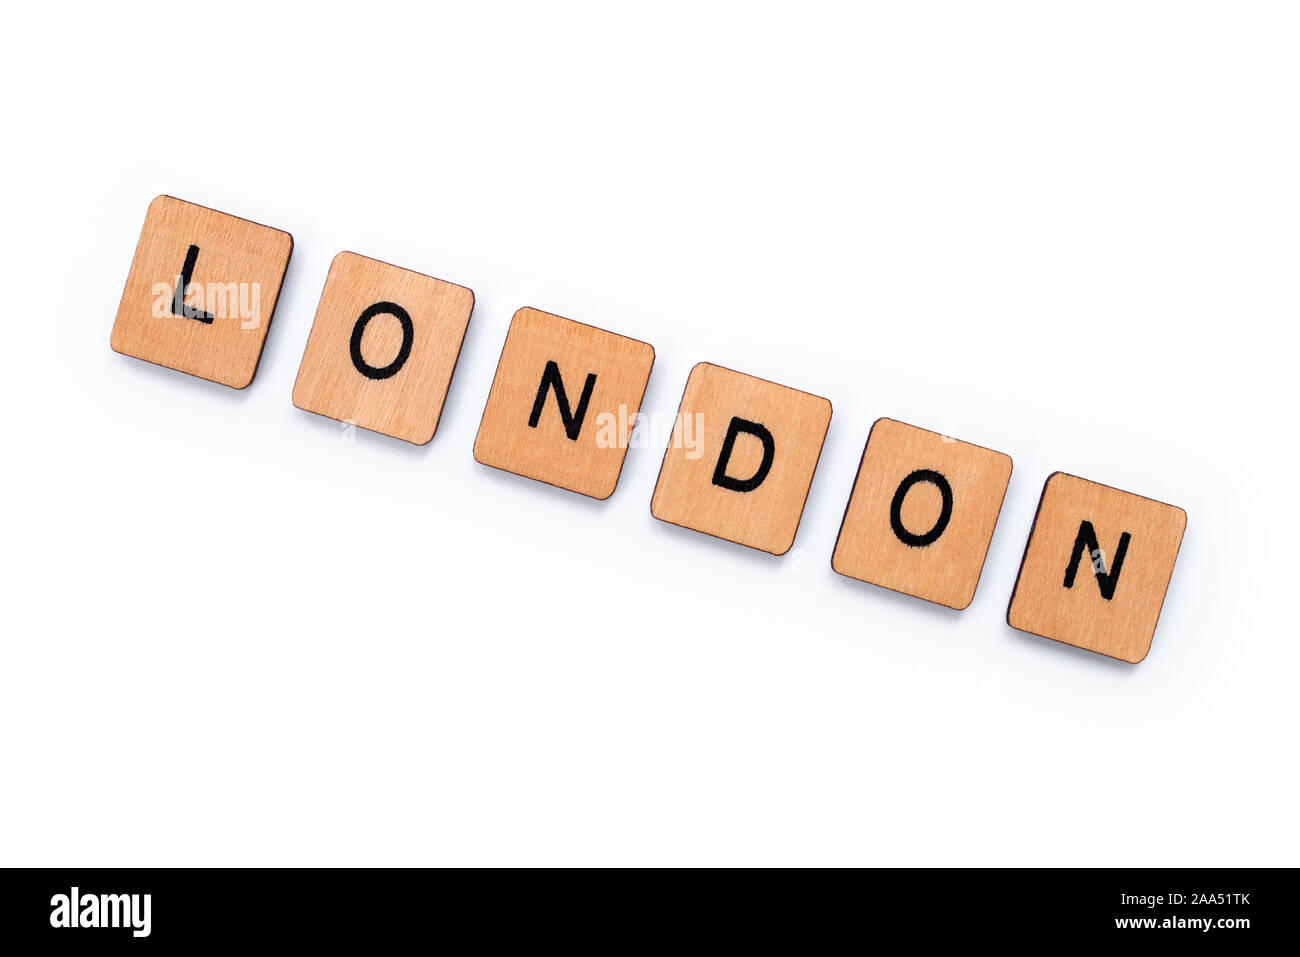 La parola Londra, farro con lettera in legno piastrelle su uno sfondo bianco. Foto Stock